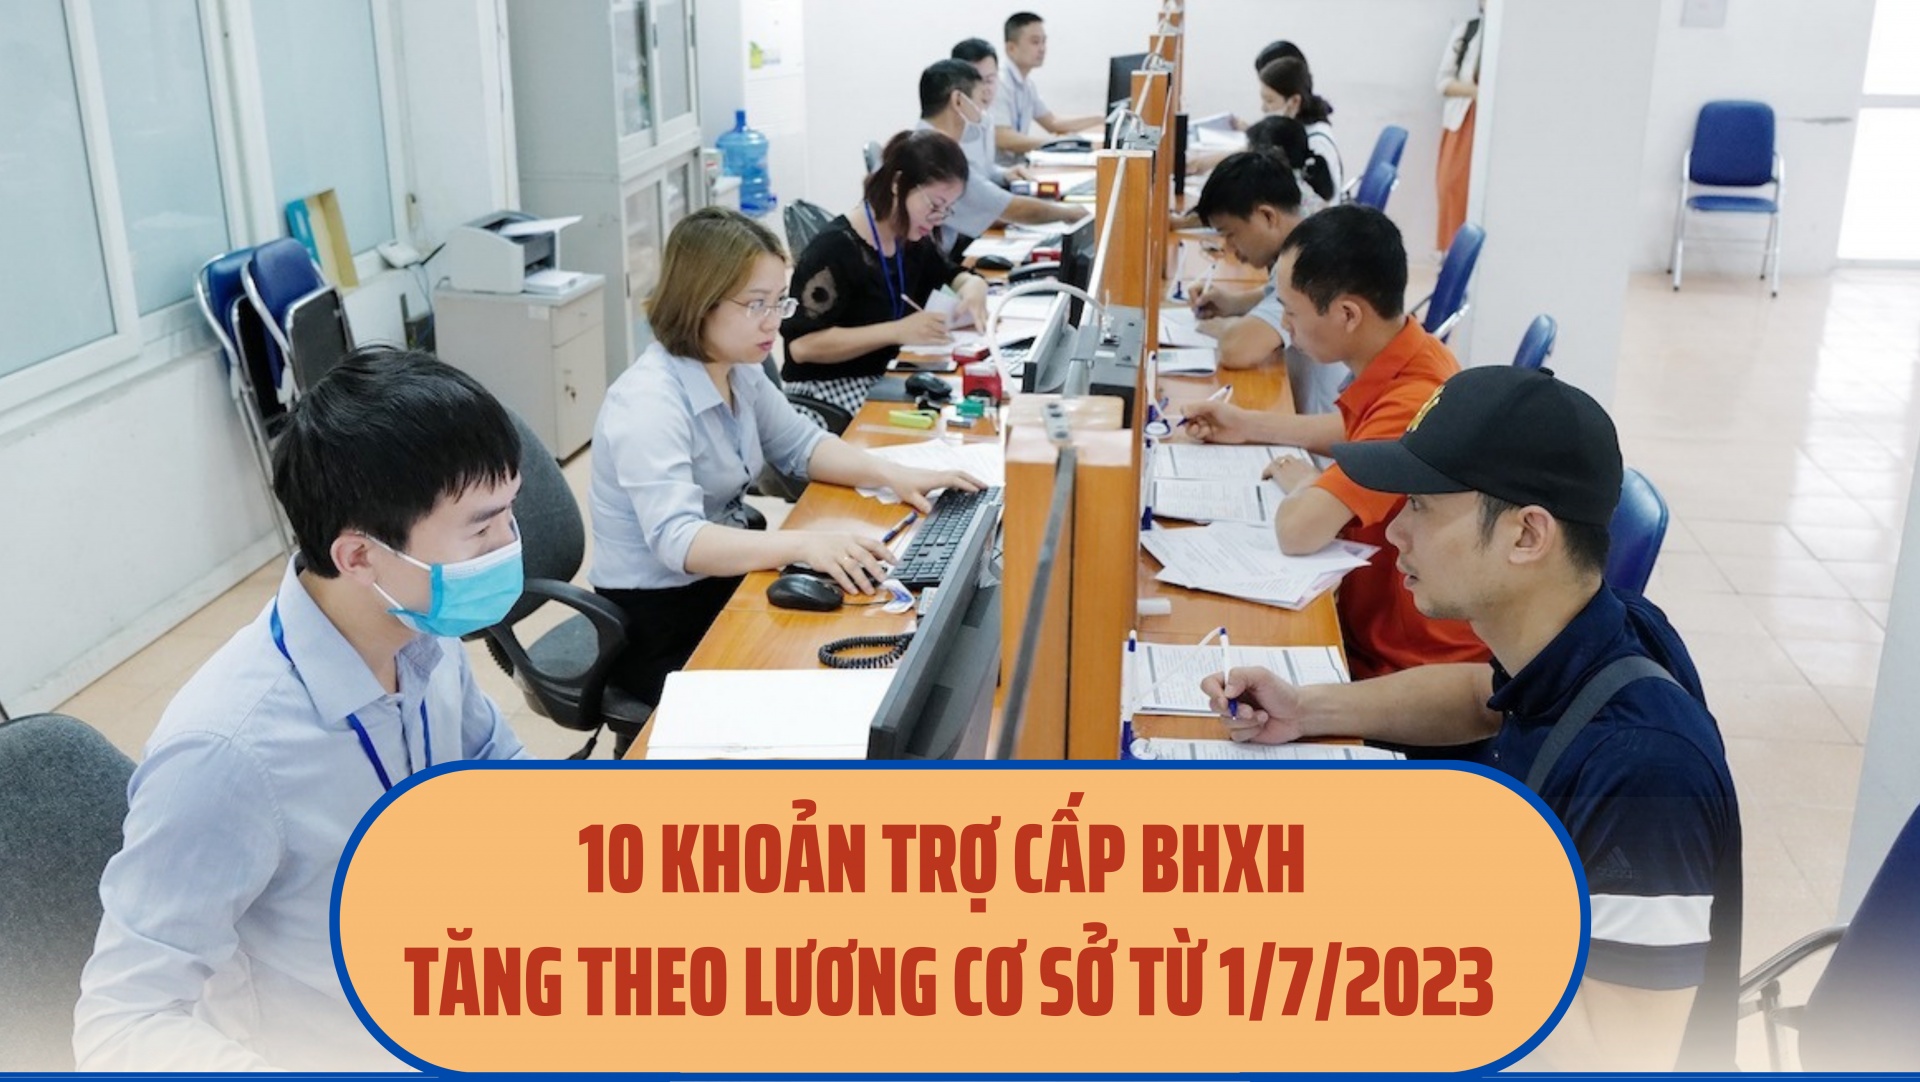 10 khoản trợ cấp BHXH tăng theo lương cơ sở từ 1/7/2023